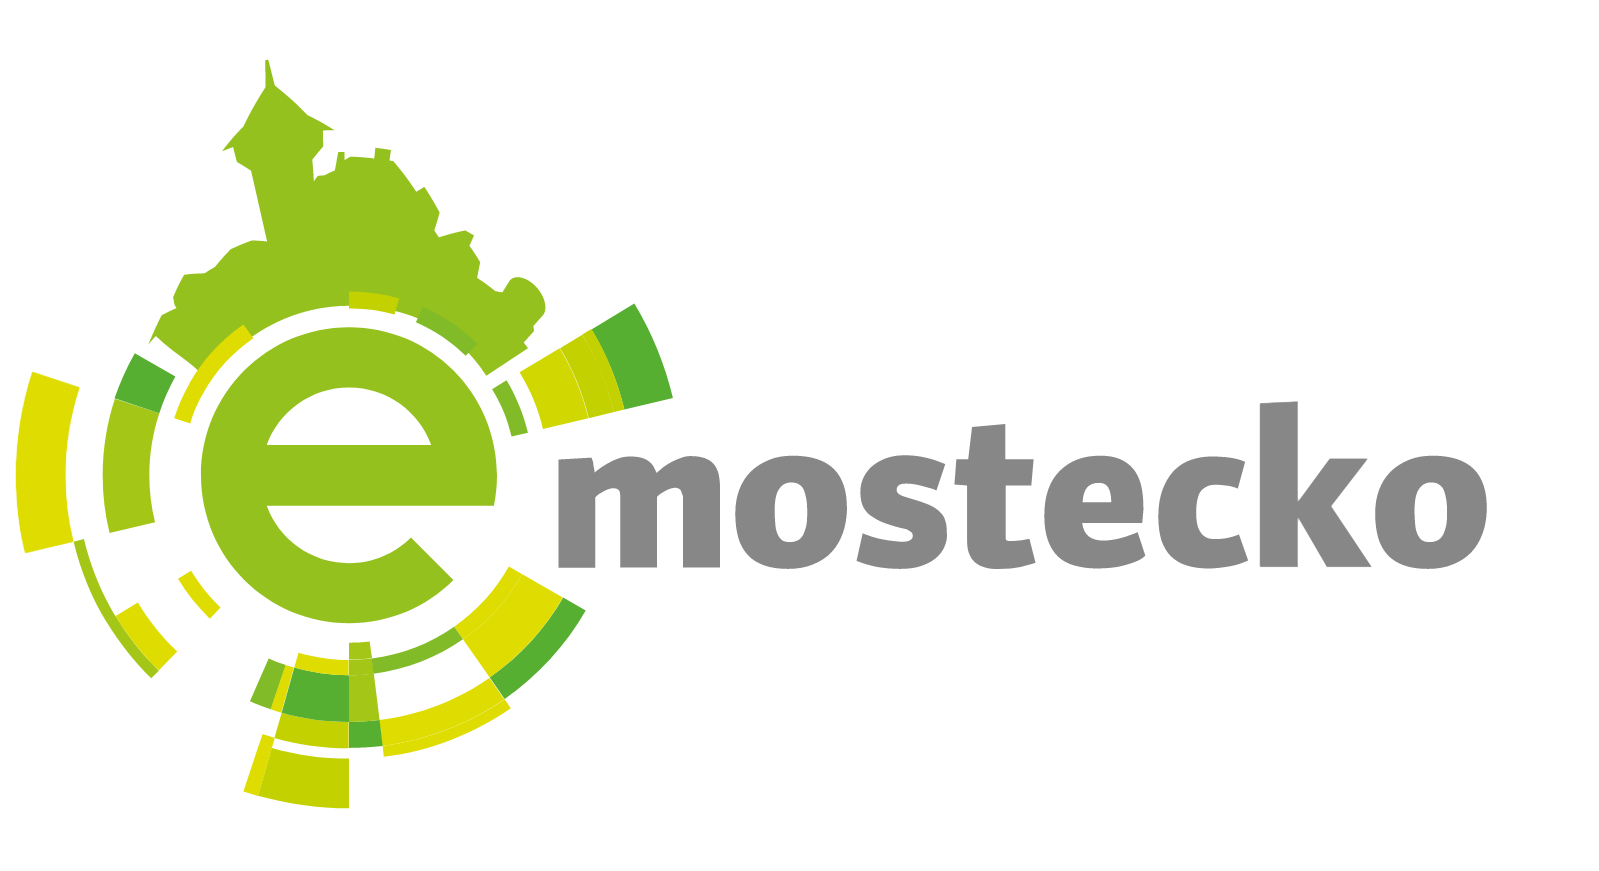 E-Mostecko.png